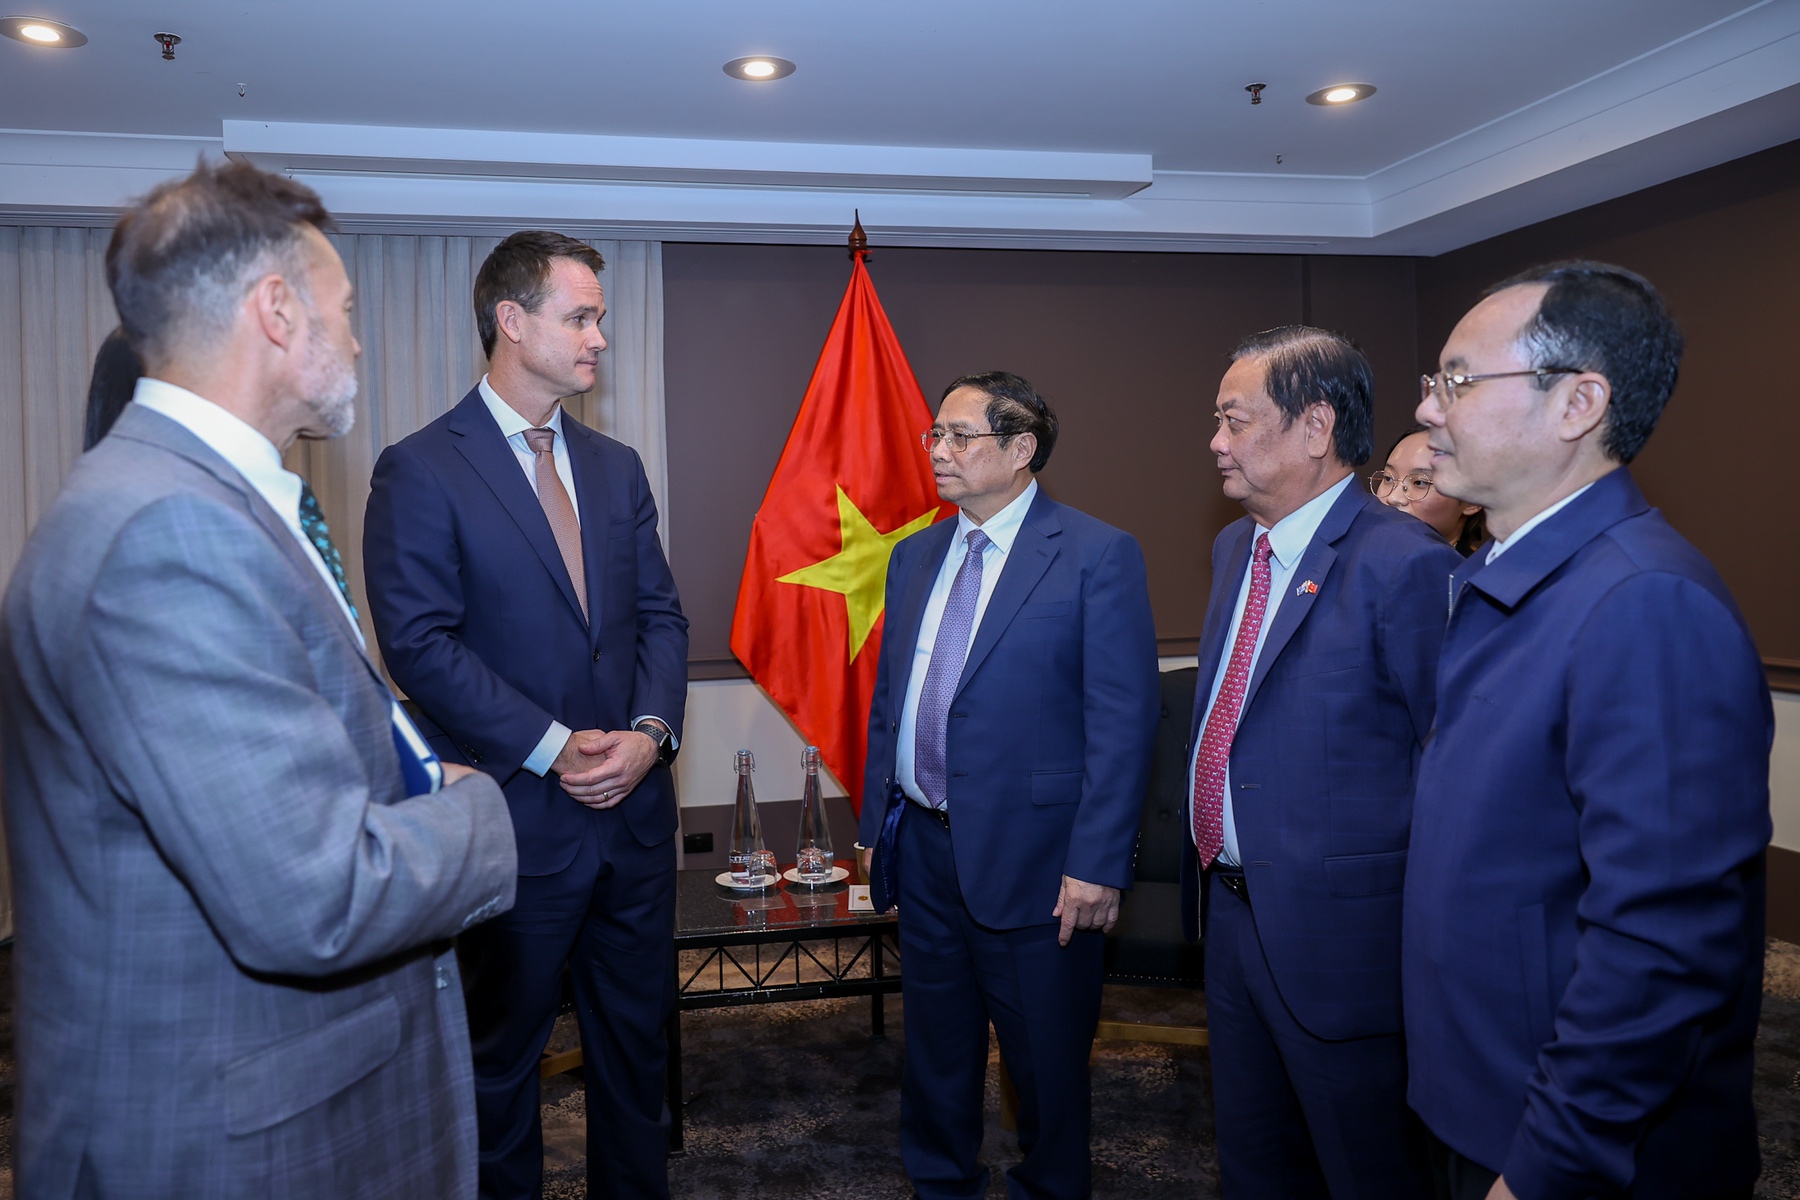 Thủ tướng mong muốn Tập đoàn SunRice hỗ trợ kết nối các đối tác phía Việt Nam với các đối tác Australia để tăng cường hợp tác trong lĩnh vực nông nghiệp giữa hai nước trong thời gian tới - Ảnh: VGP/Nhật Bắc